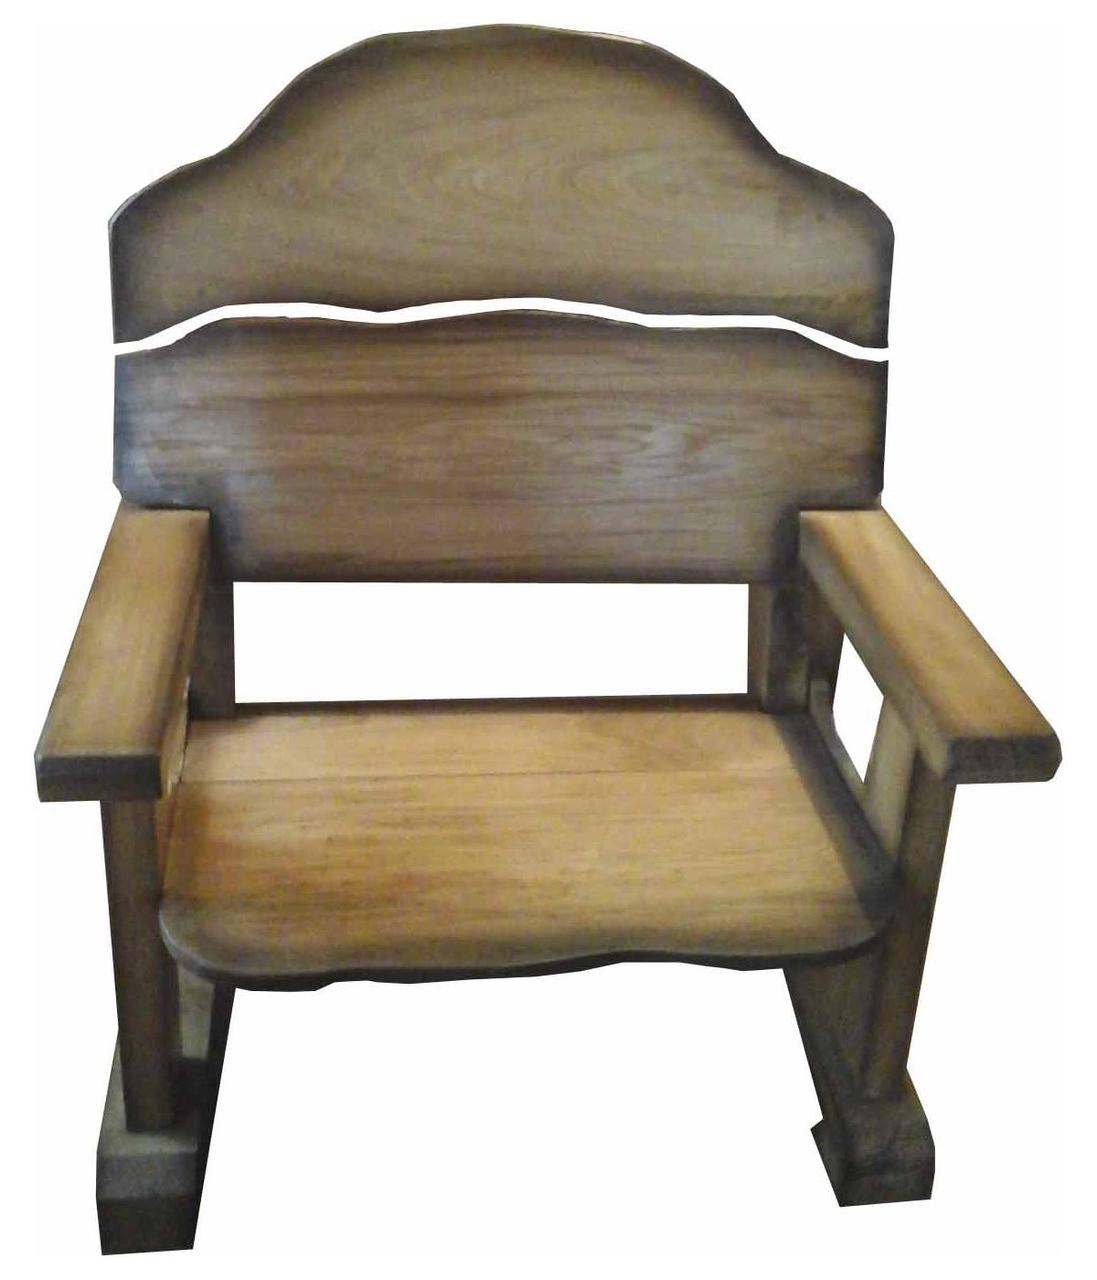 Кресло из массива дуба для дома, бани, дачи.